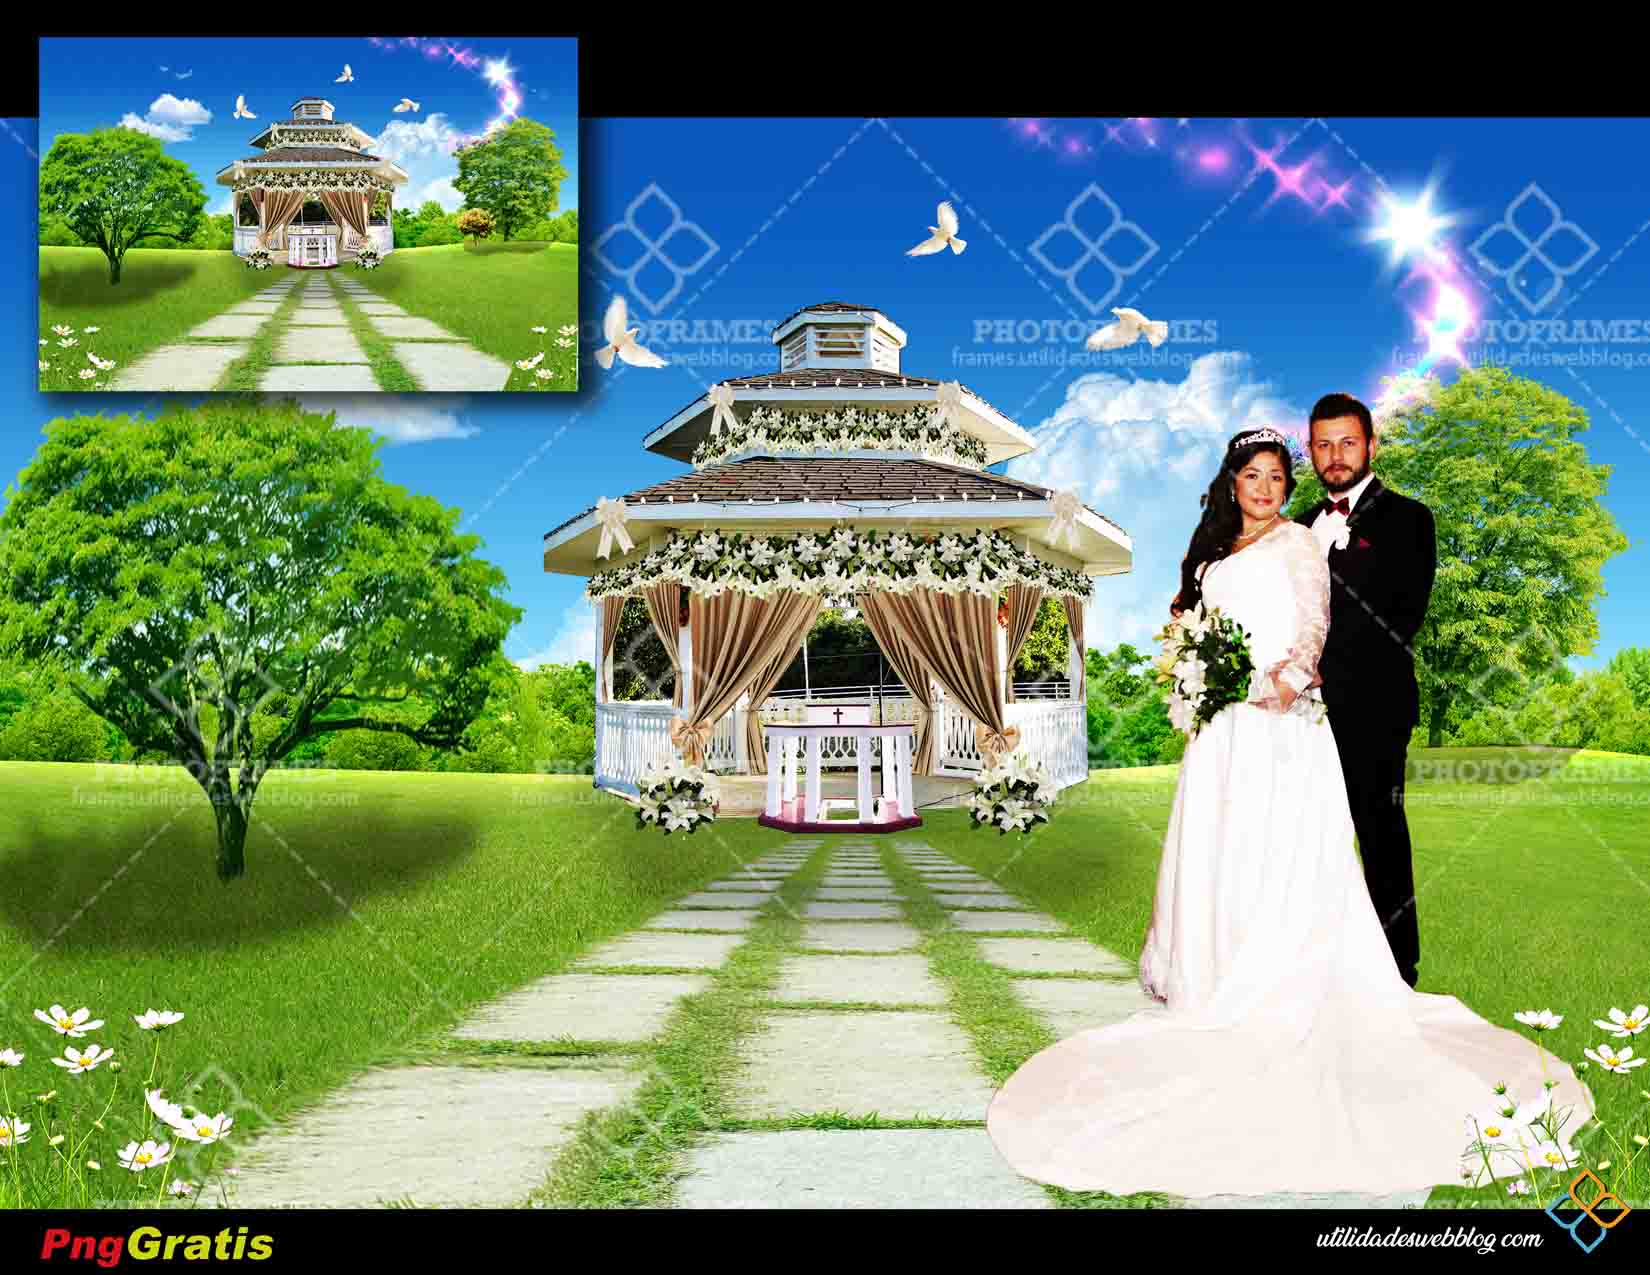 Fondo de paisaje natural para crear fotomontajes de bodas